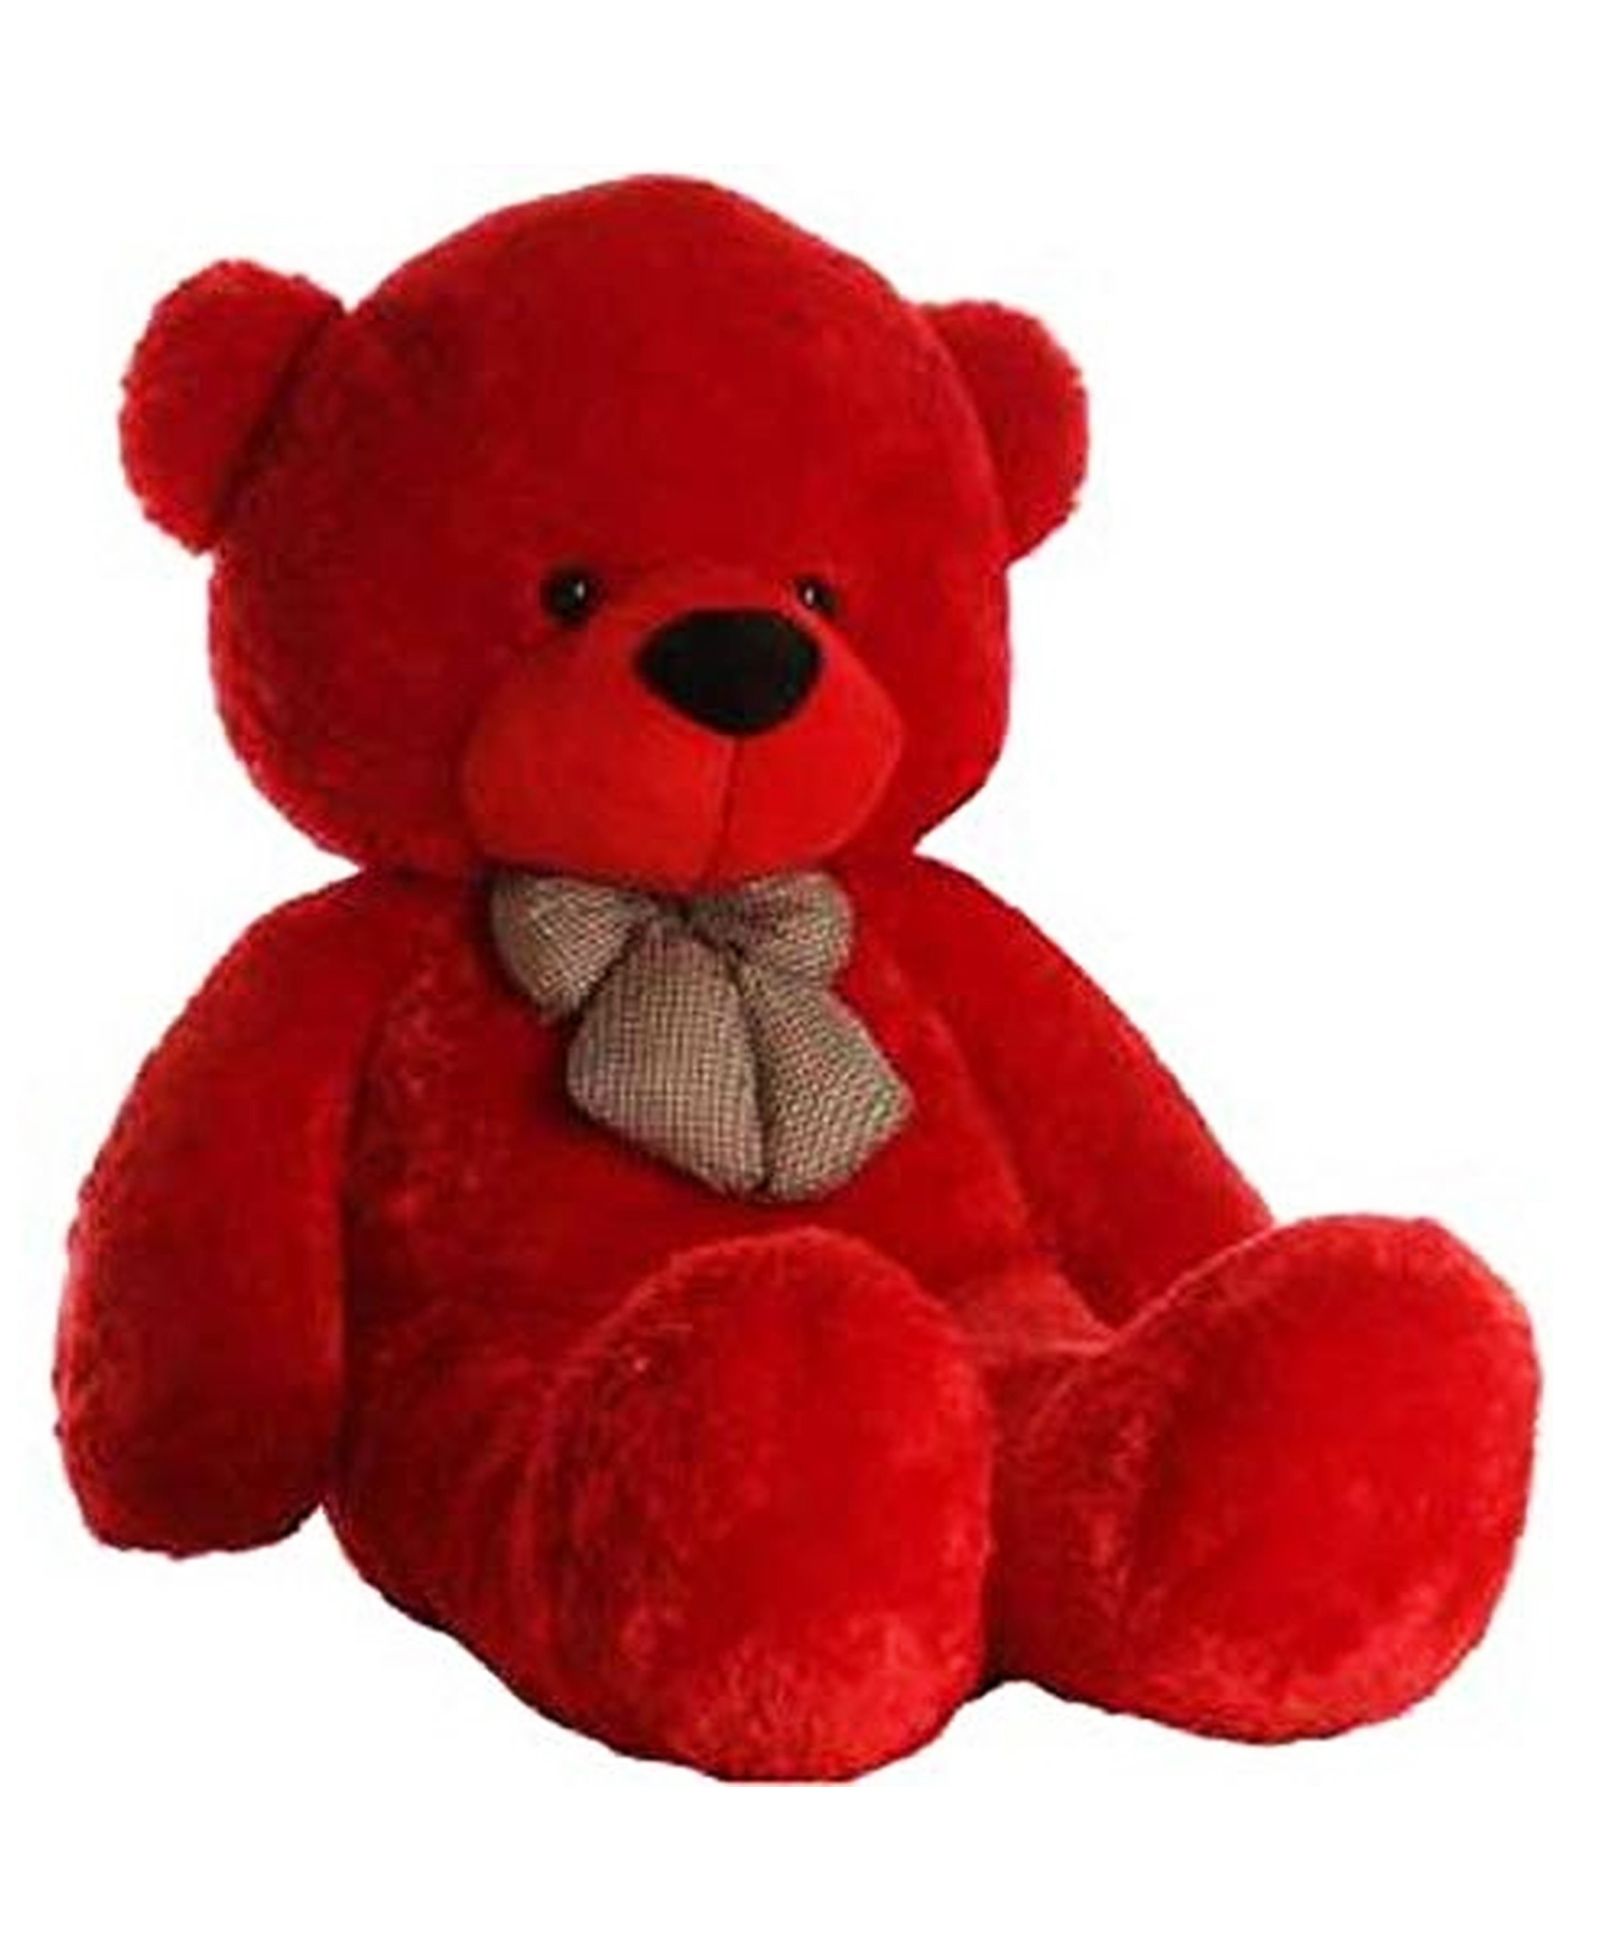 90 cm teddy bear